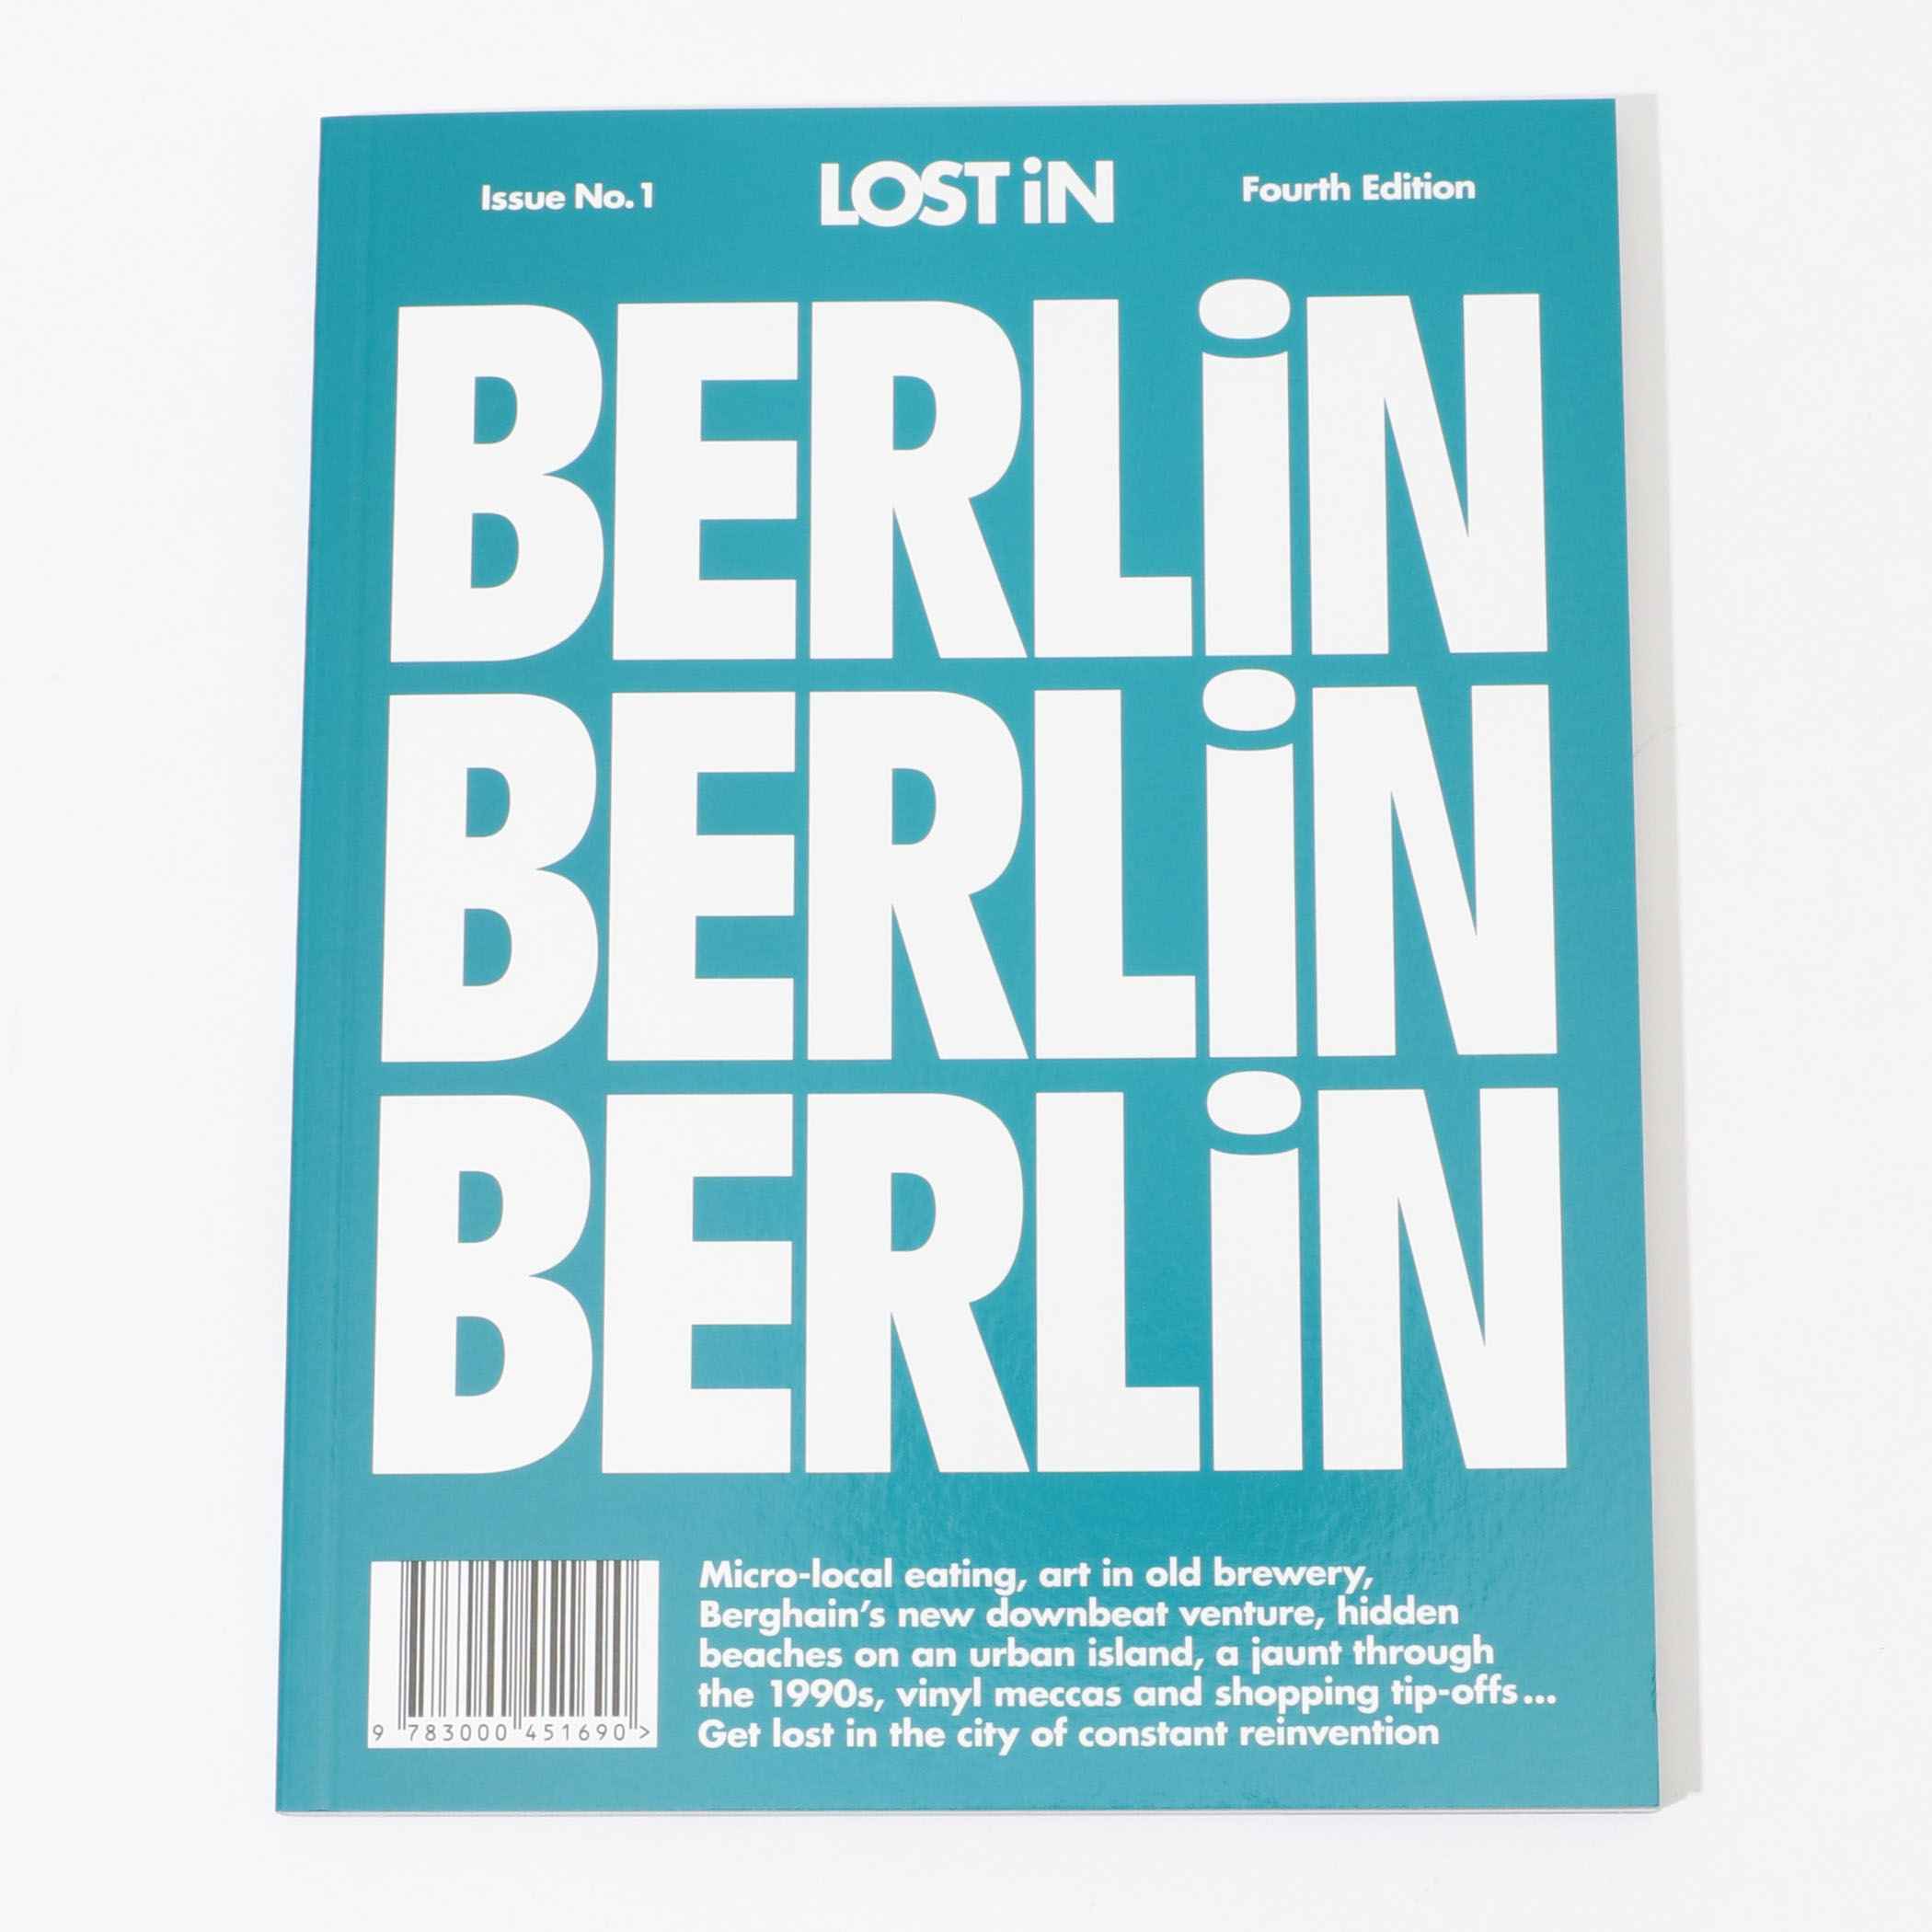 LOST IN Berlin